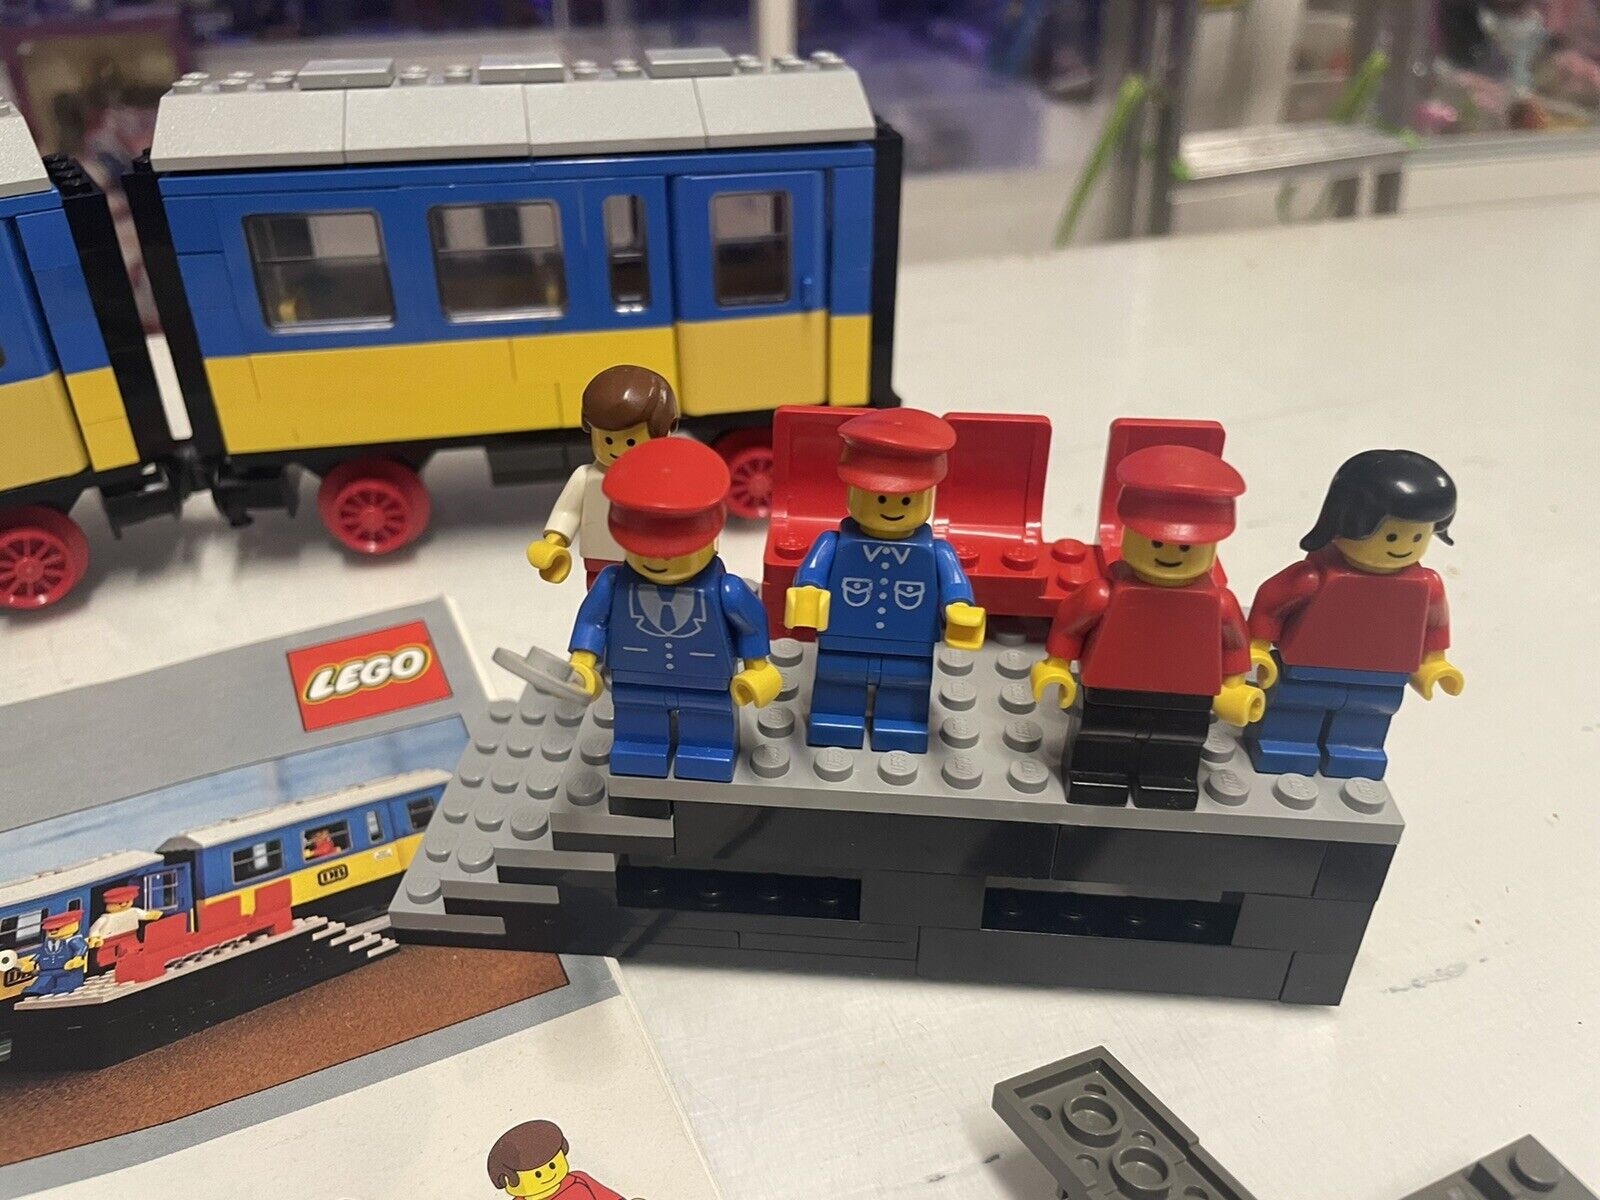 LEGO-4712-Train-9v-Push-Along-Passenger-Steam-Train-in-ITALIA-134356321700-5